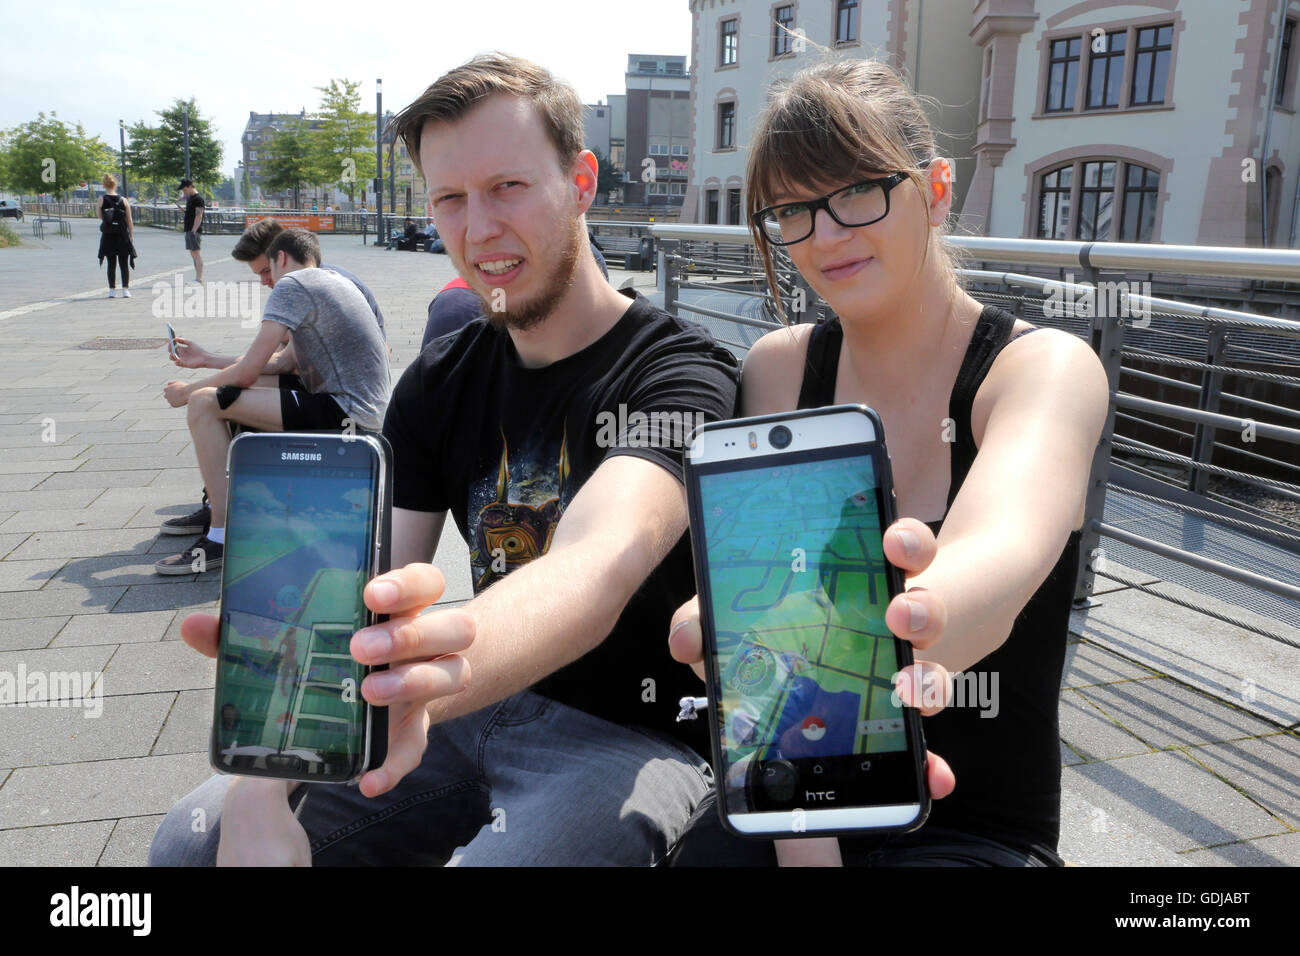 POKEMON GO, giovani giocare il nuovo gioco Nintendo Pokémon andare sui loro smartphone sul Lago di Phoenix di Dortmund in Germania. I giocatori cercano di raggiungerlo nel mondo reale virtuale mostri Pokemon sui loro dispositivi smartphone. Foto Stock